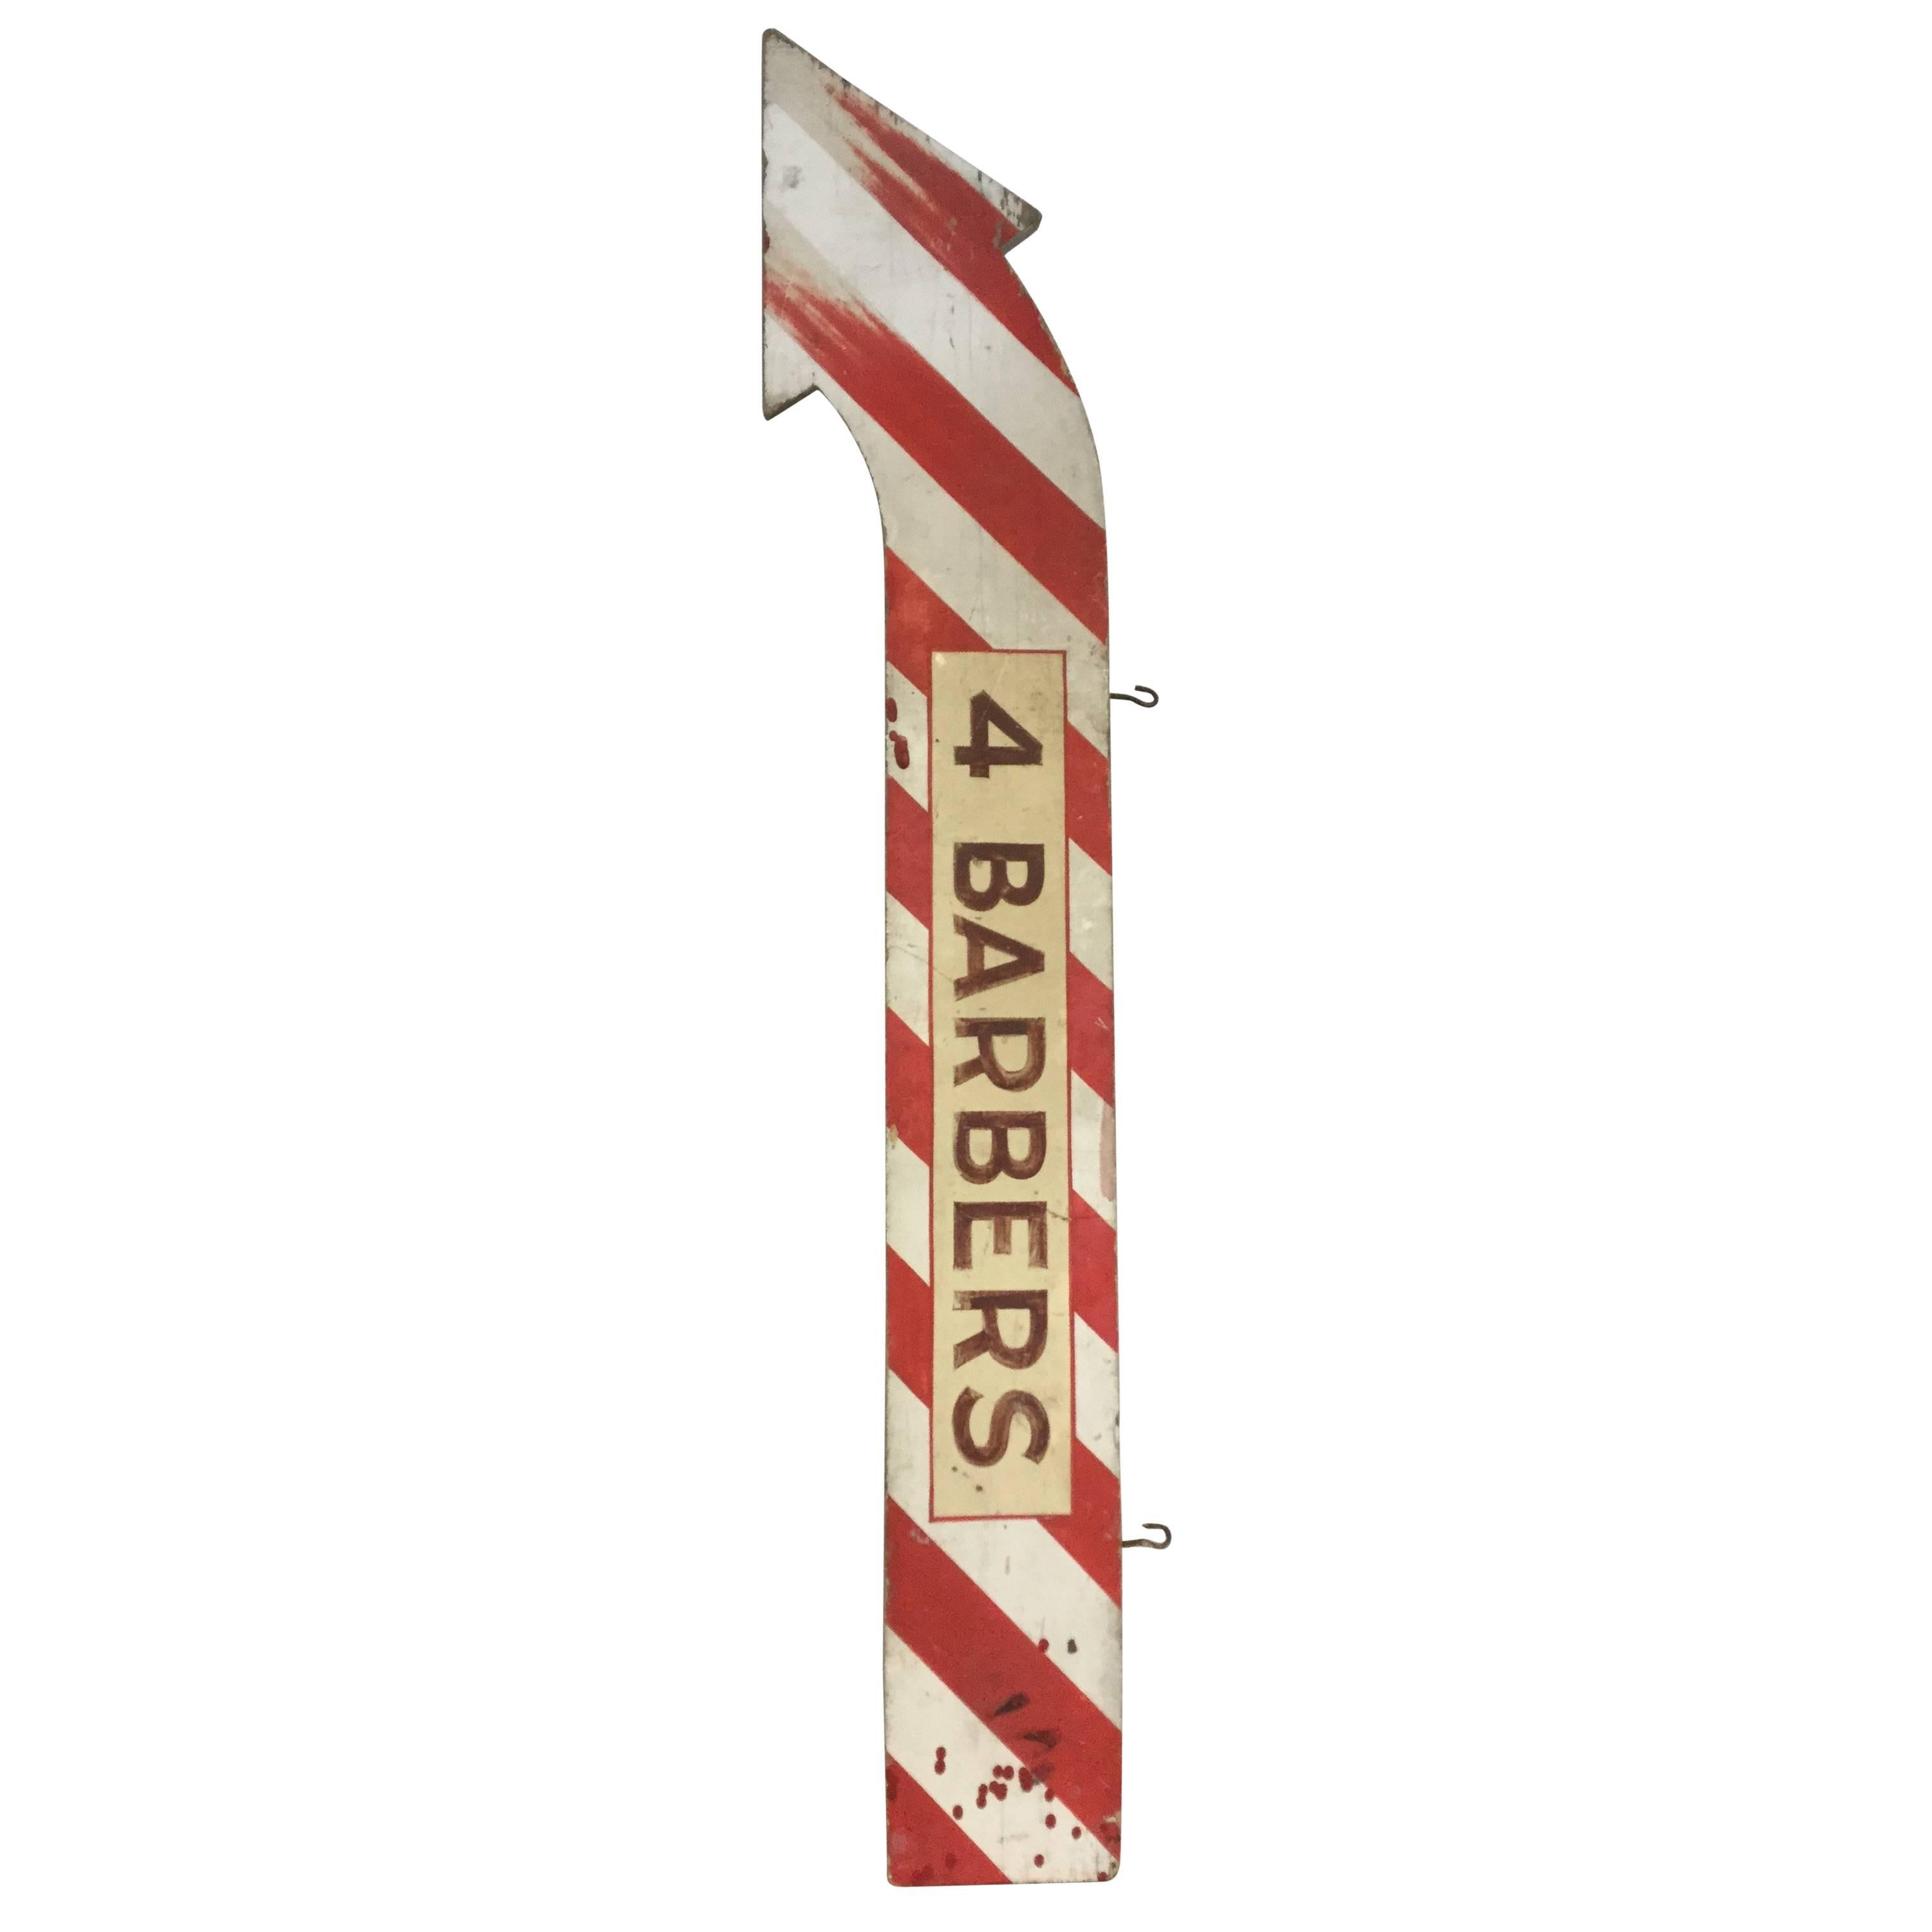 Old Barber Shop Sign Arrow